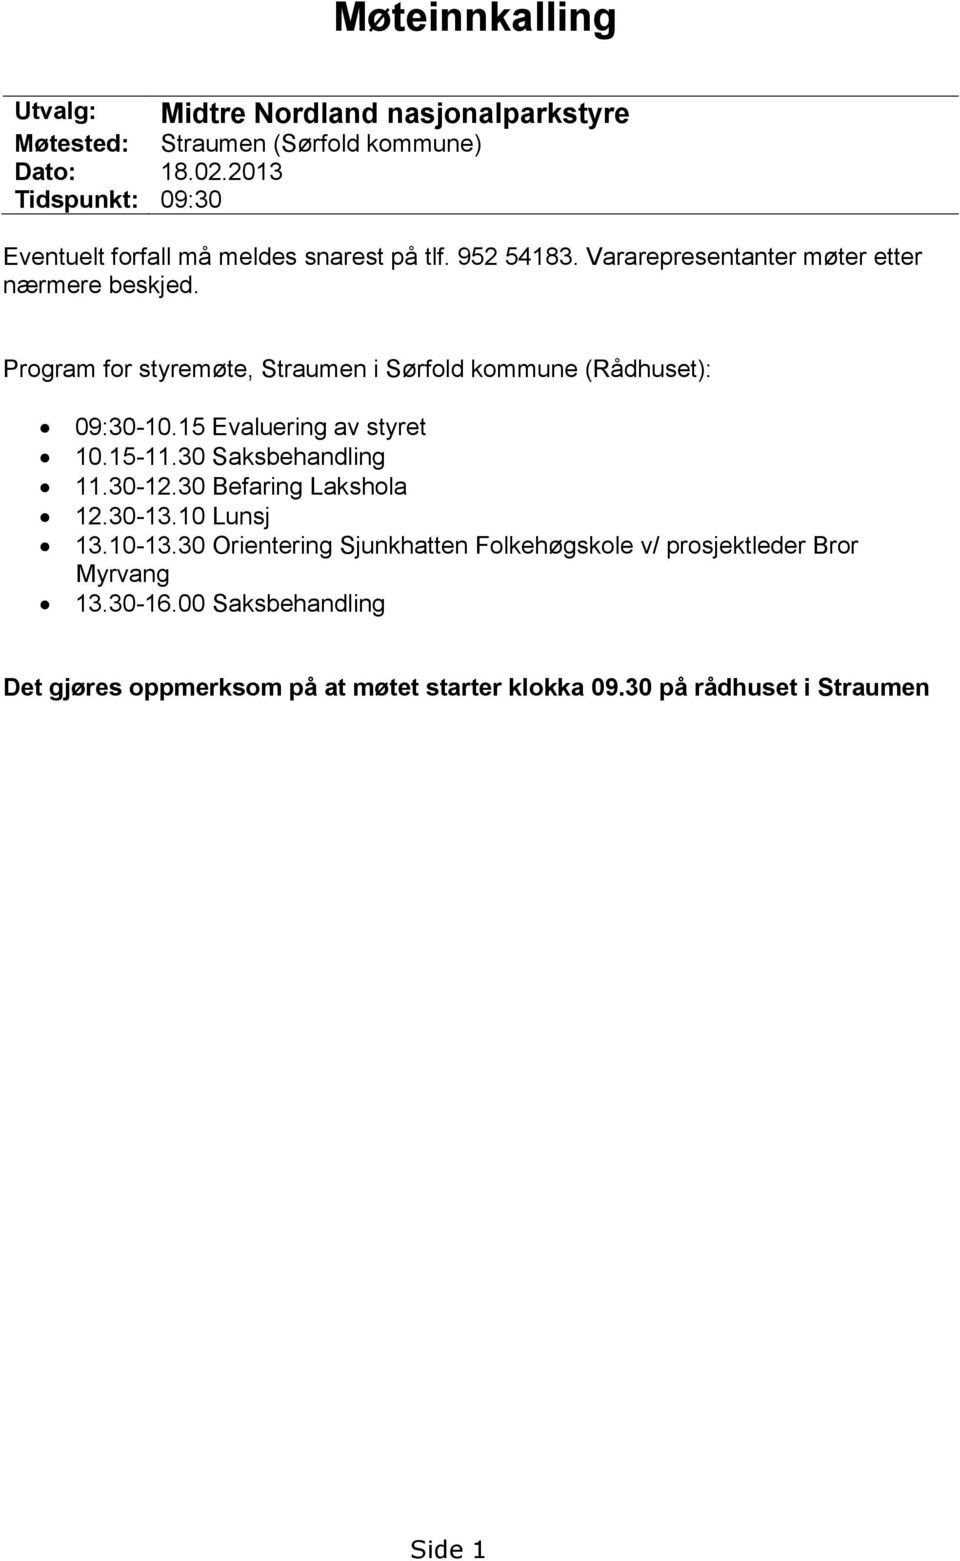 Program for styremøte, Straumen i Sørfold kommune (Rådhuset): 09:30-10.15 Evaluering av styret 10.15-11.30 Saksbehandling 11.30-12.